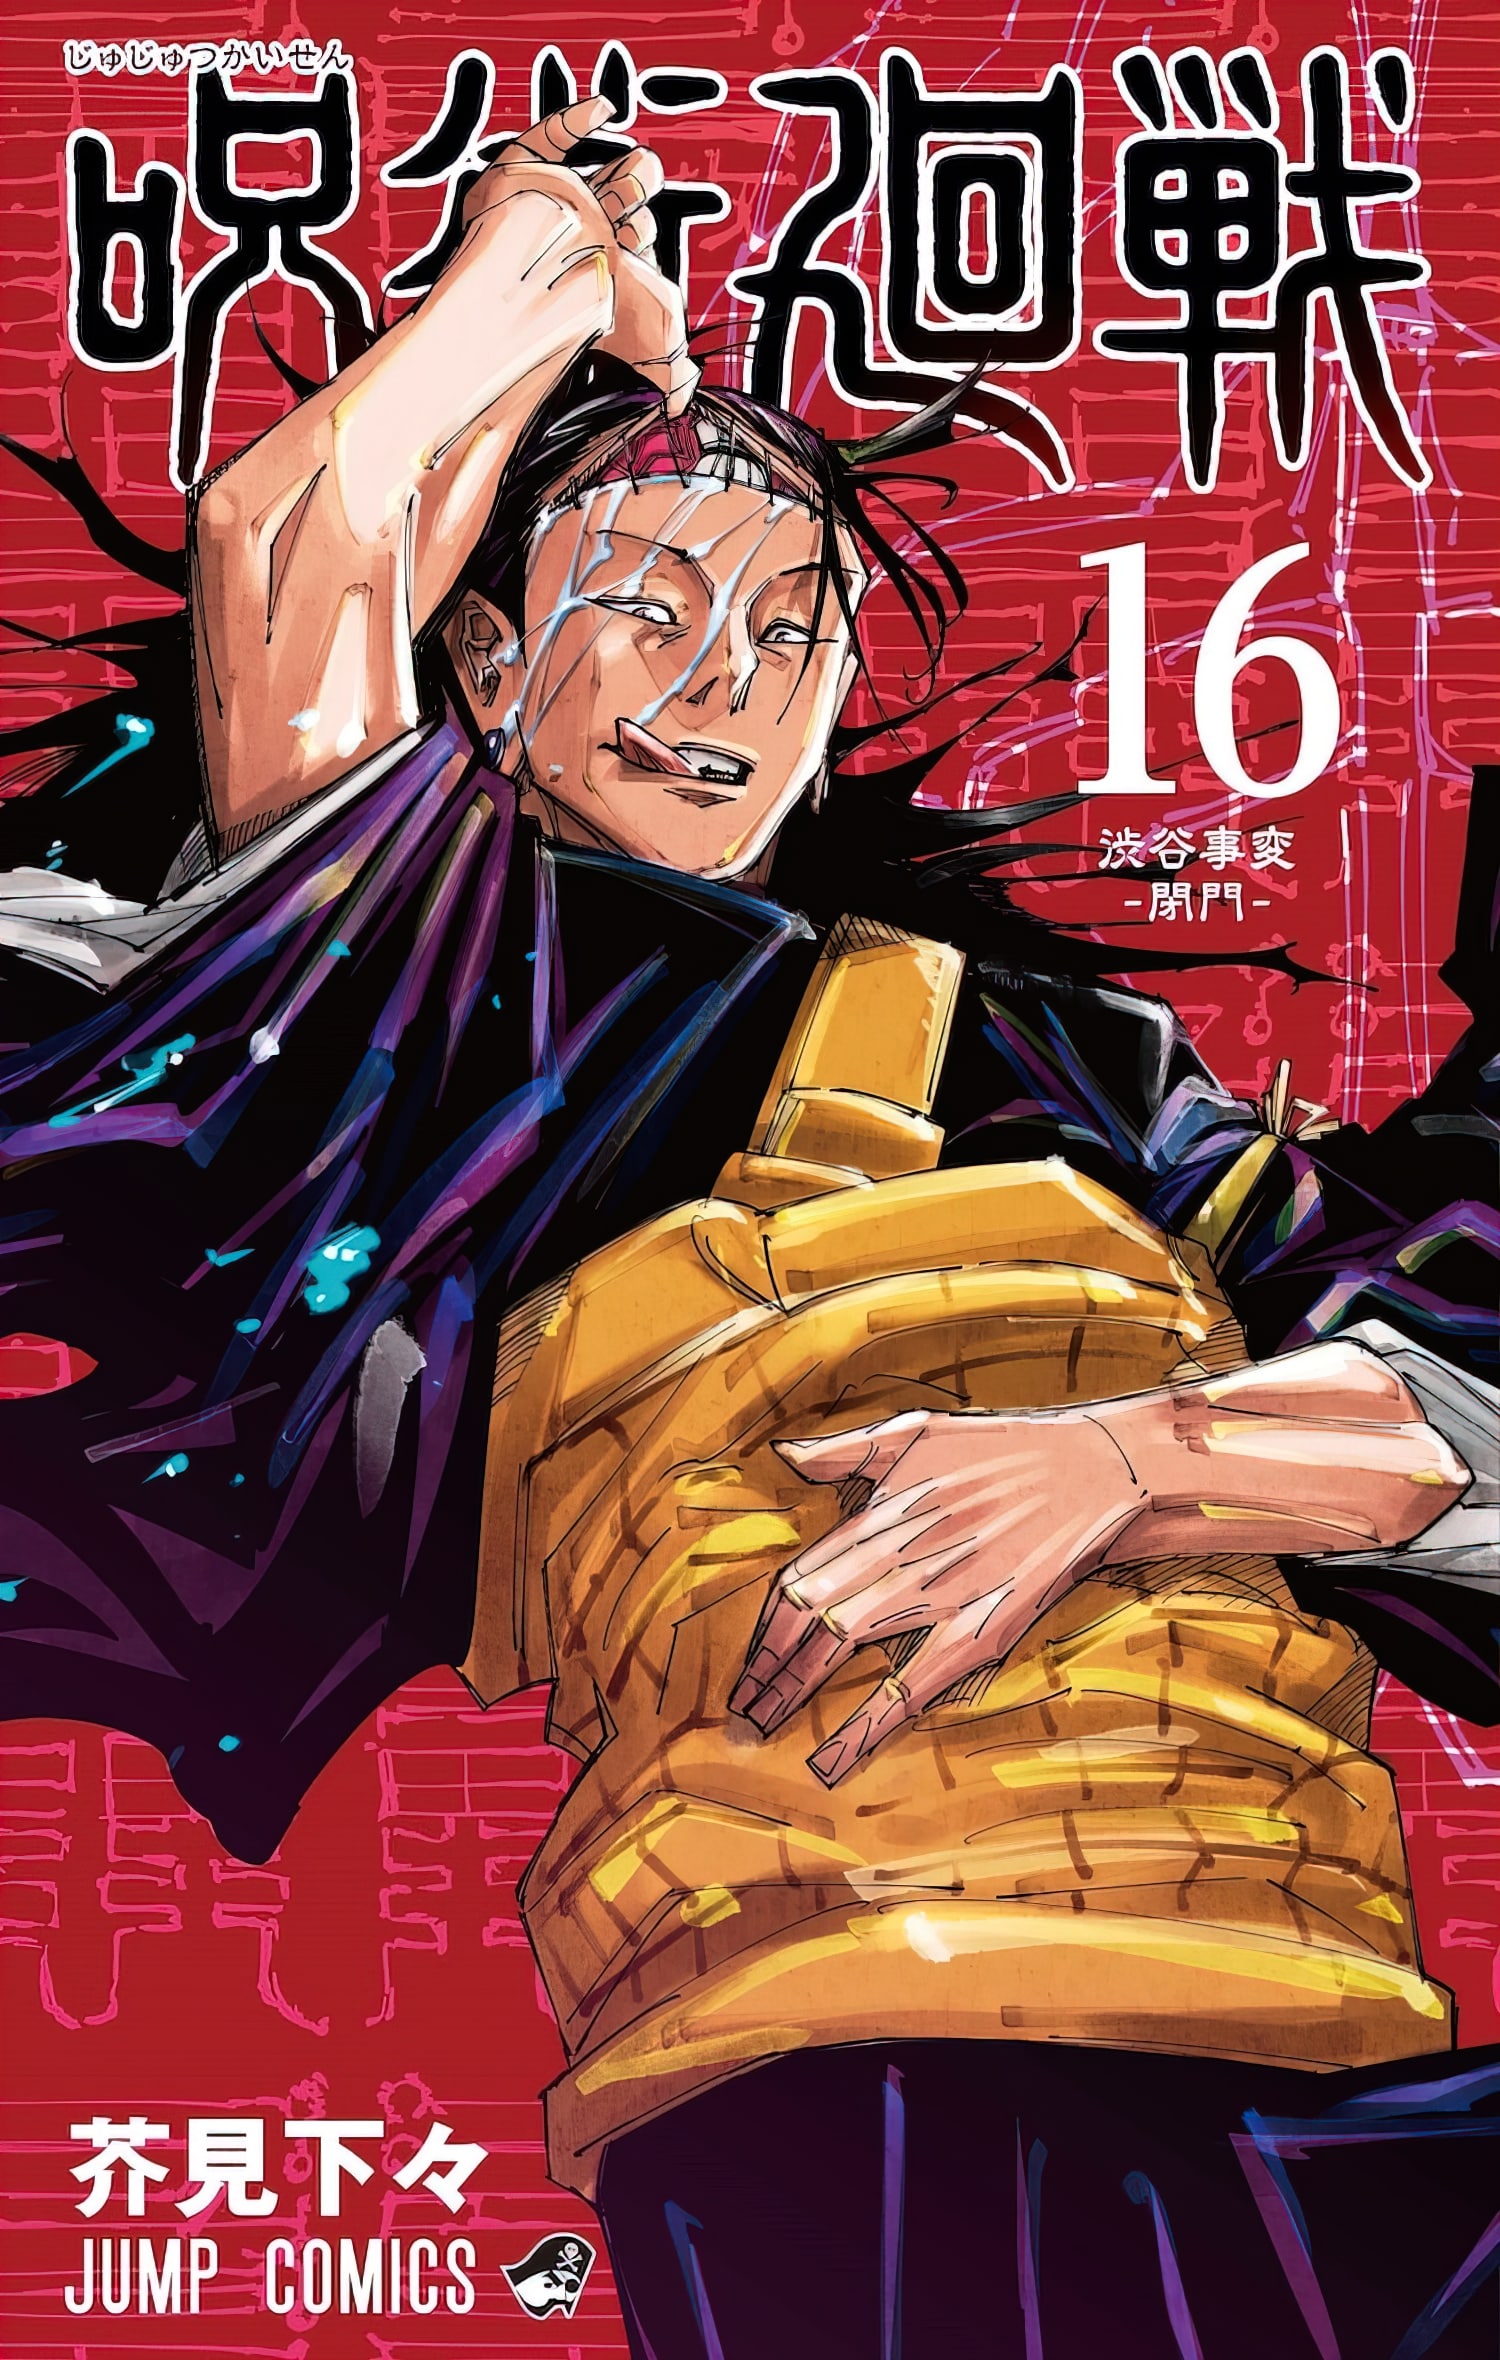 El Manga Jujutsu Kaisen Revela La Portada De Su Volumen AnimeCL